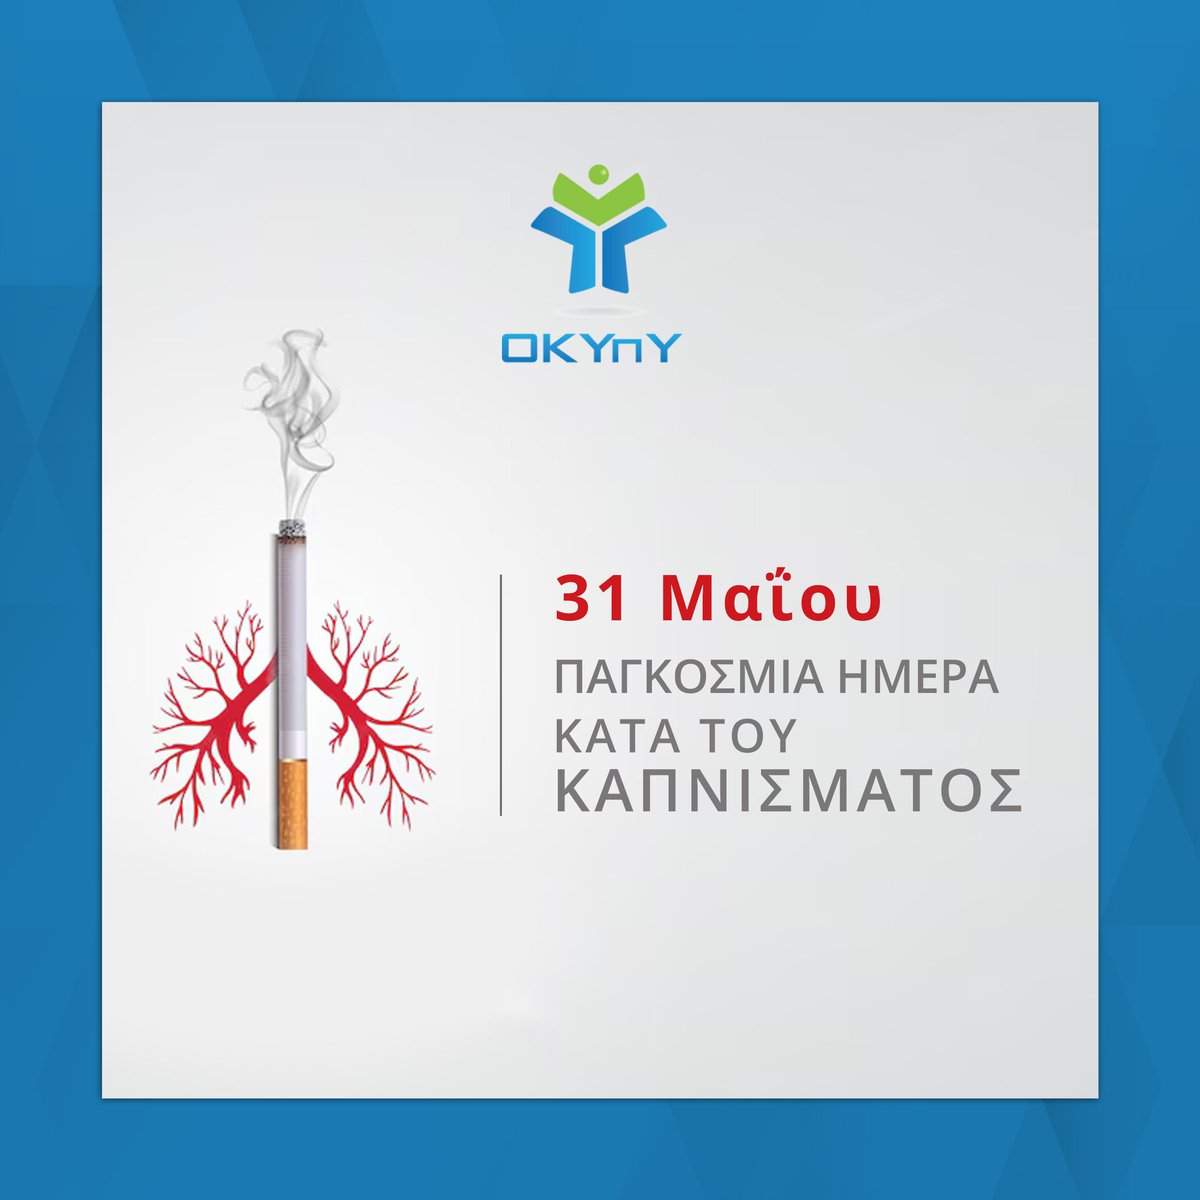 H 31η Μαΐου έχει οριστεί ως Παγκόσμια Ημέρα κατά του Καπνίσματος με στόχο την δημόσια επισήμανση των βλαβερών επιπτώσεων του καπνίσματος. 🚬 🚫

Ιατρείο Διακοπής Καπνίσματος του ΟΚΥπΥ 
shso.org.cy/clinic/iatreio…

#καπνισμα
#NoSmokingDay